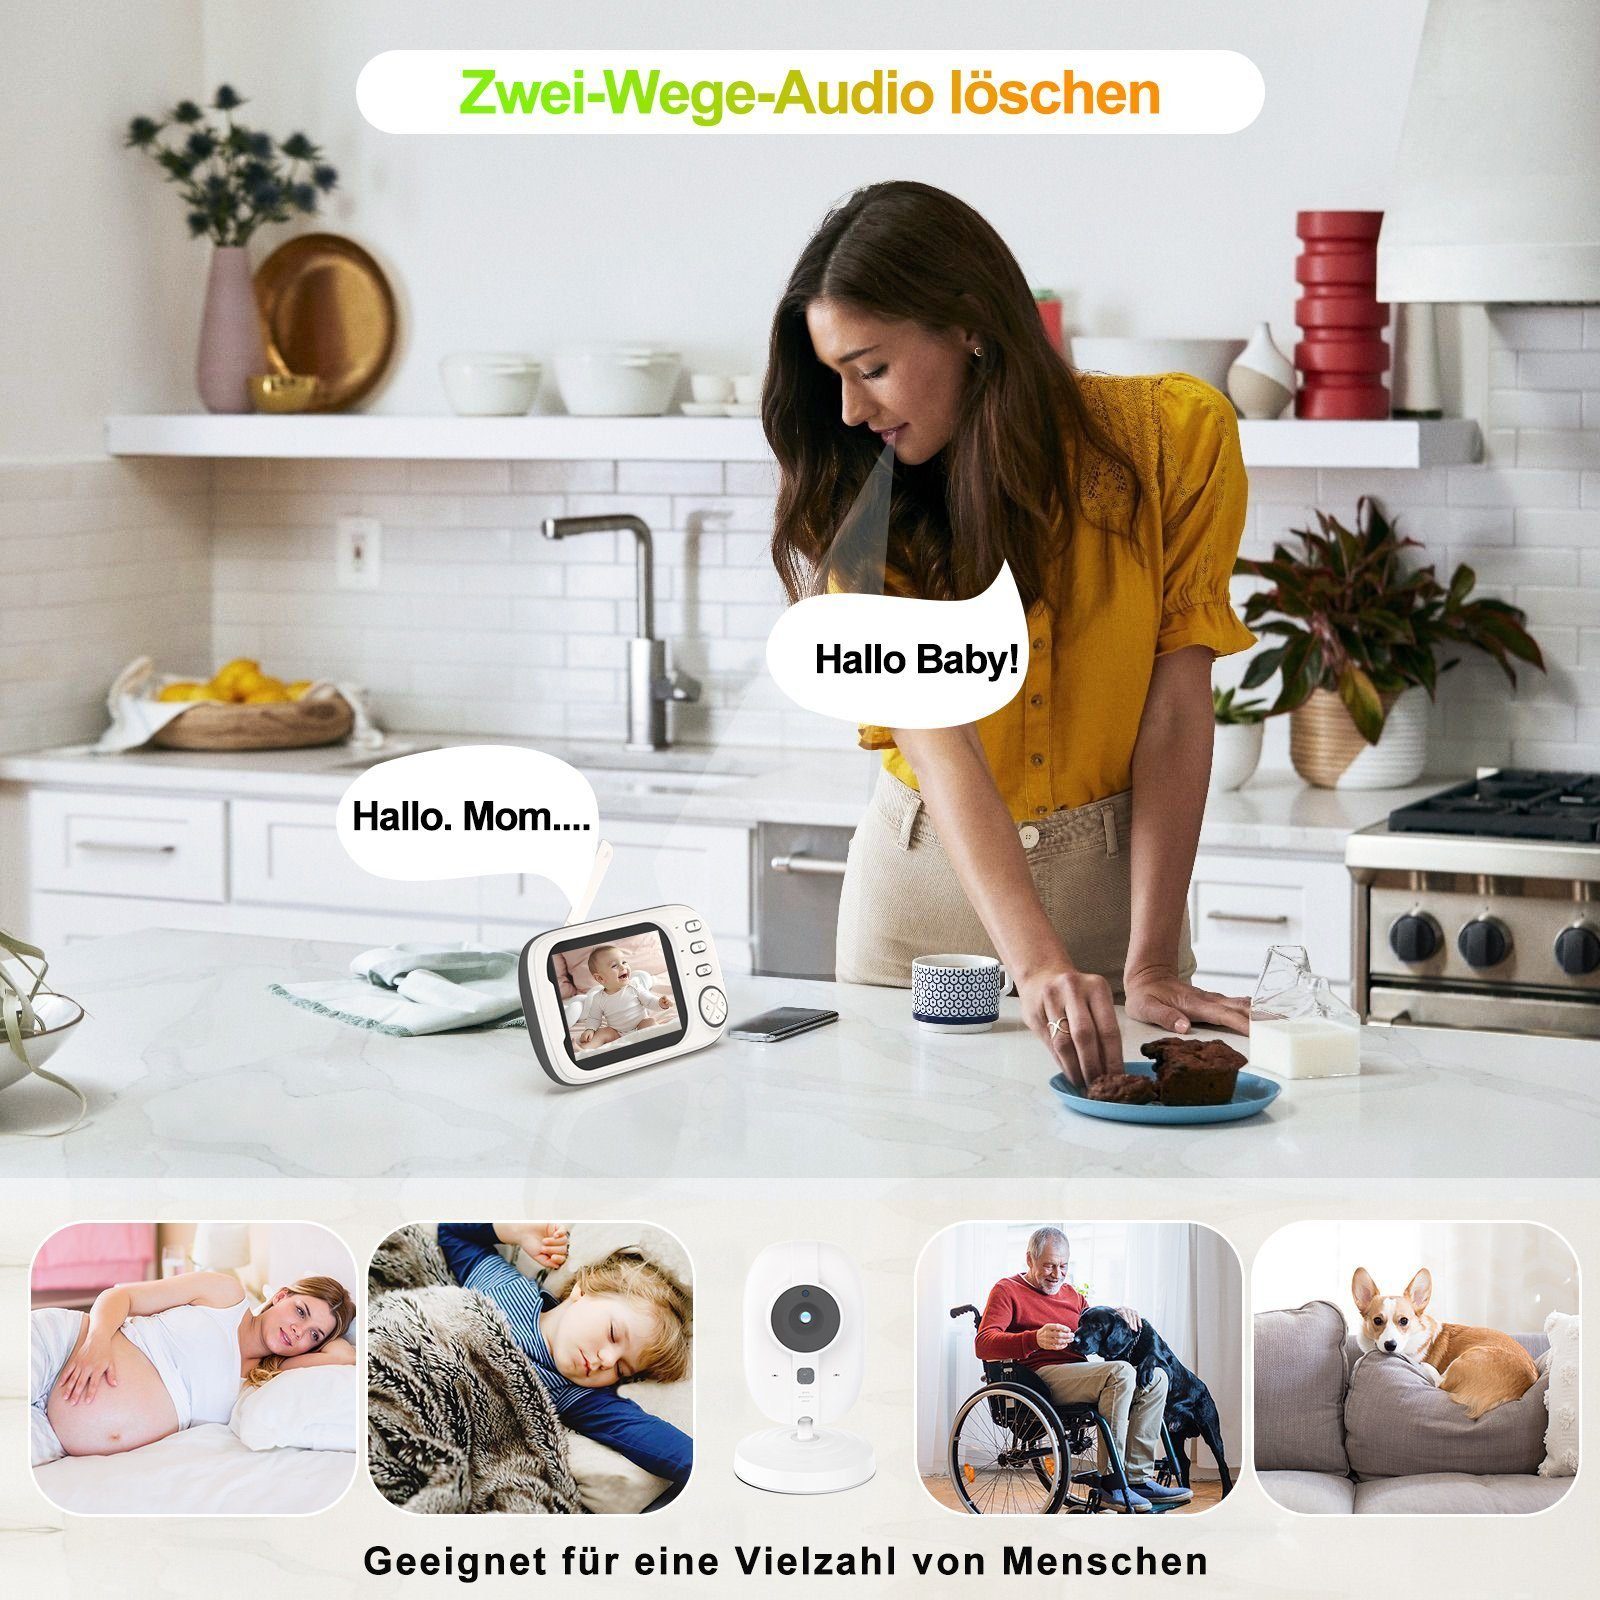 Blickwinkel Babyphone 3.5"LCD Babyphone Bildschirm mit DOPWii 360° Kamera